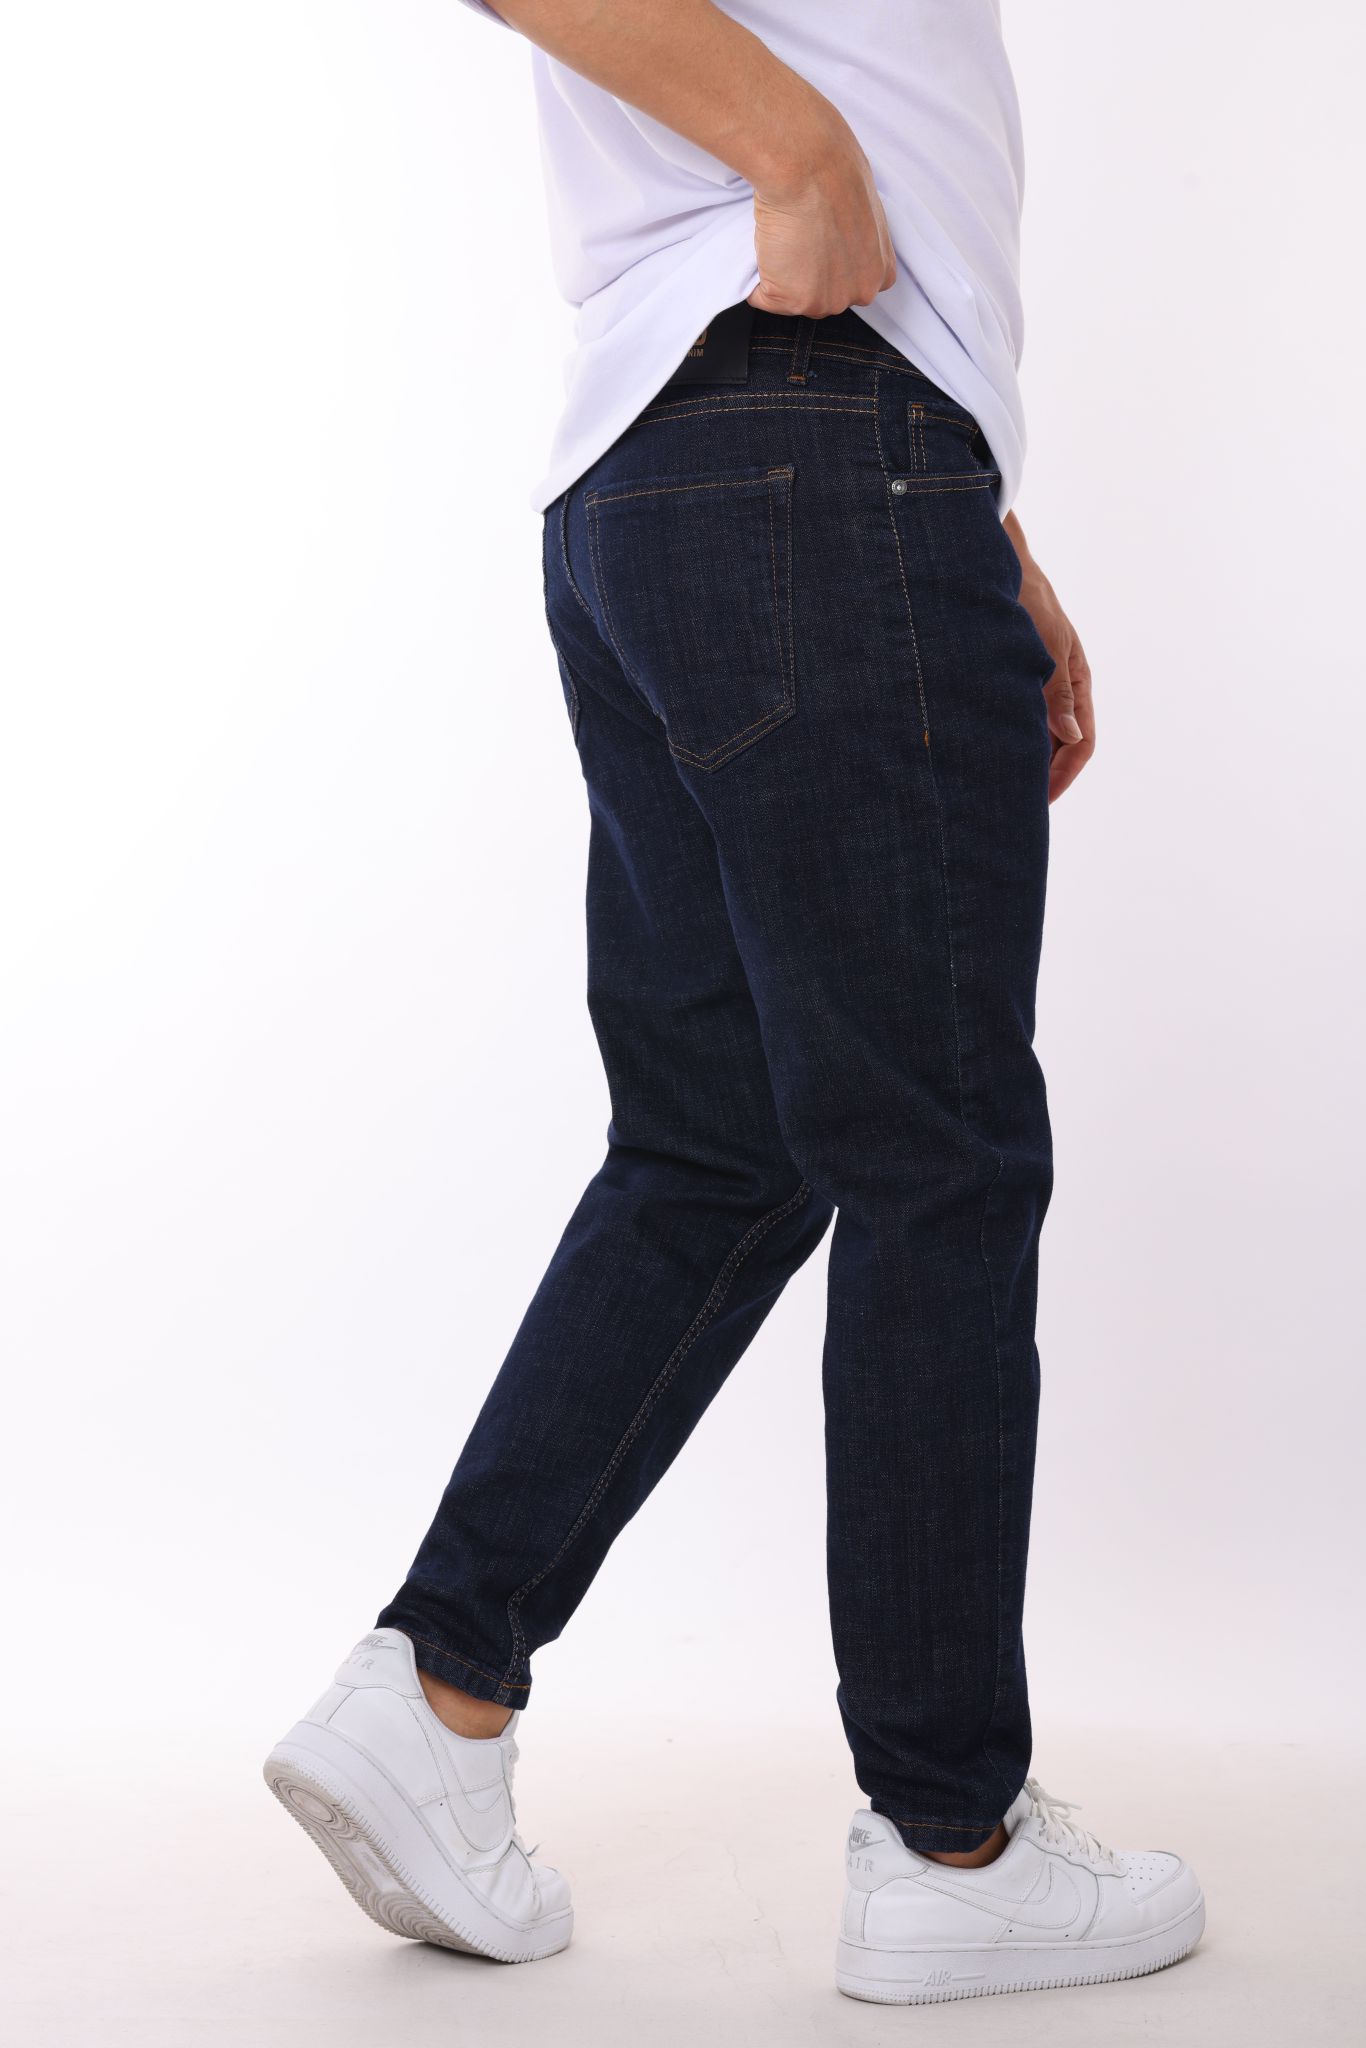 Spodnie męskie   jeans  Roz  29-38.  1 kolor . Paczka 8szt